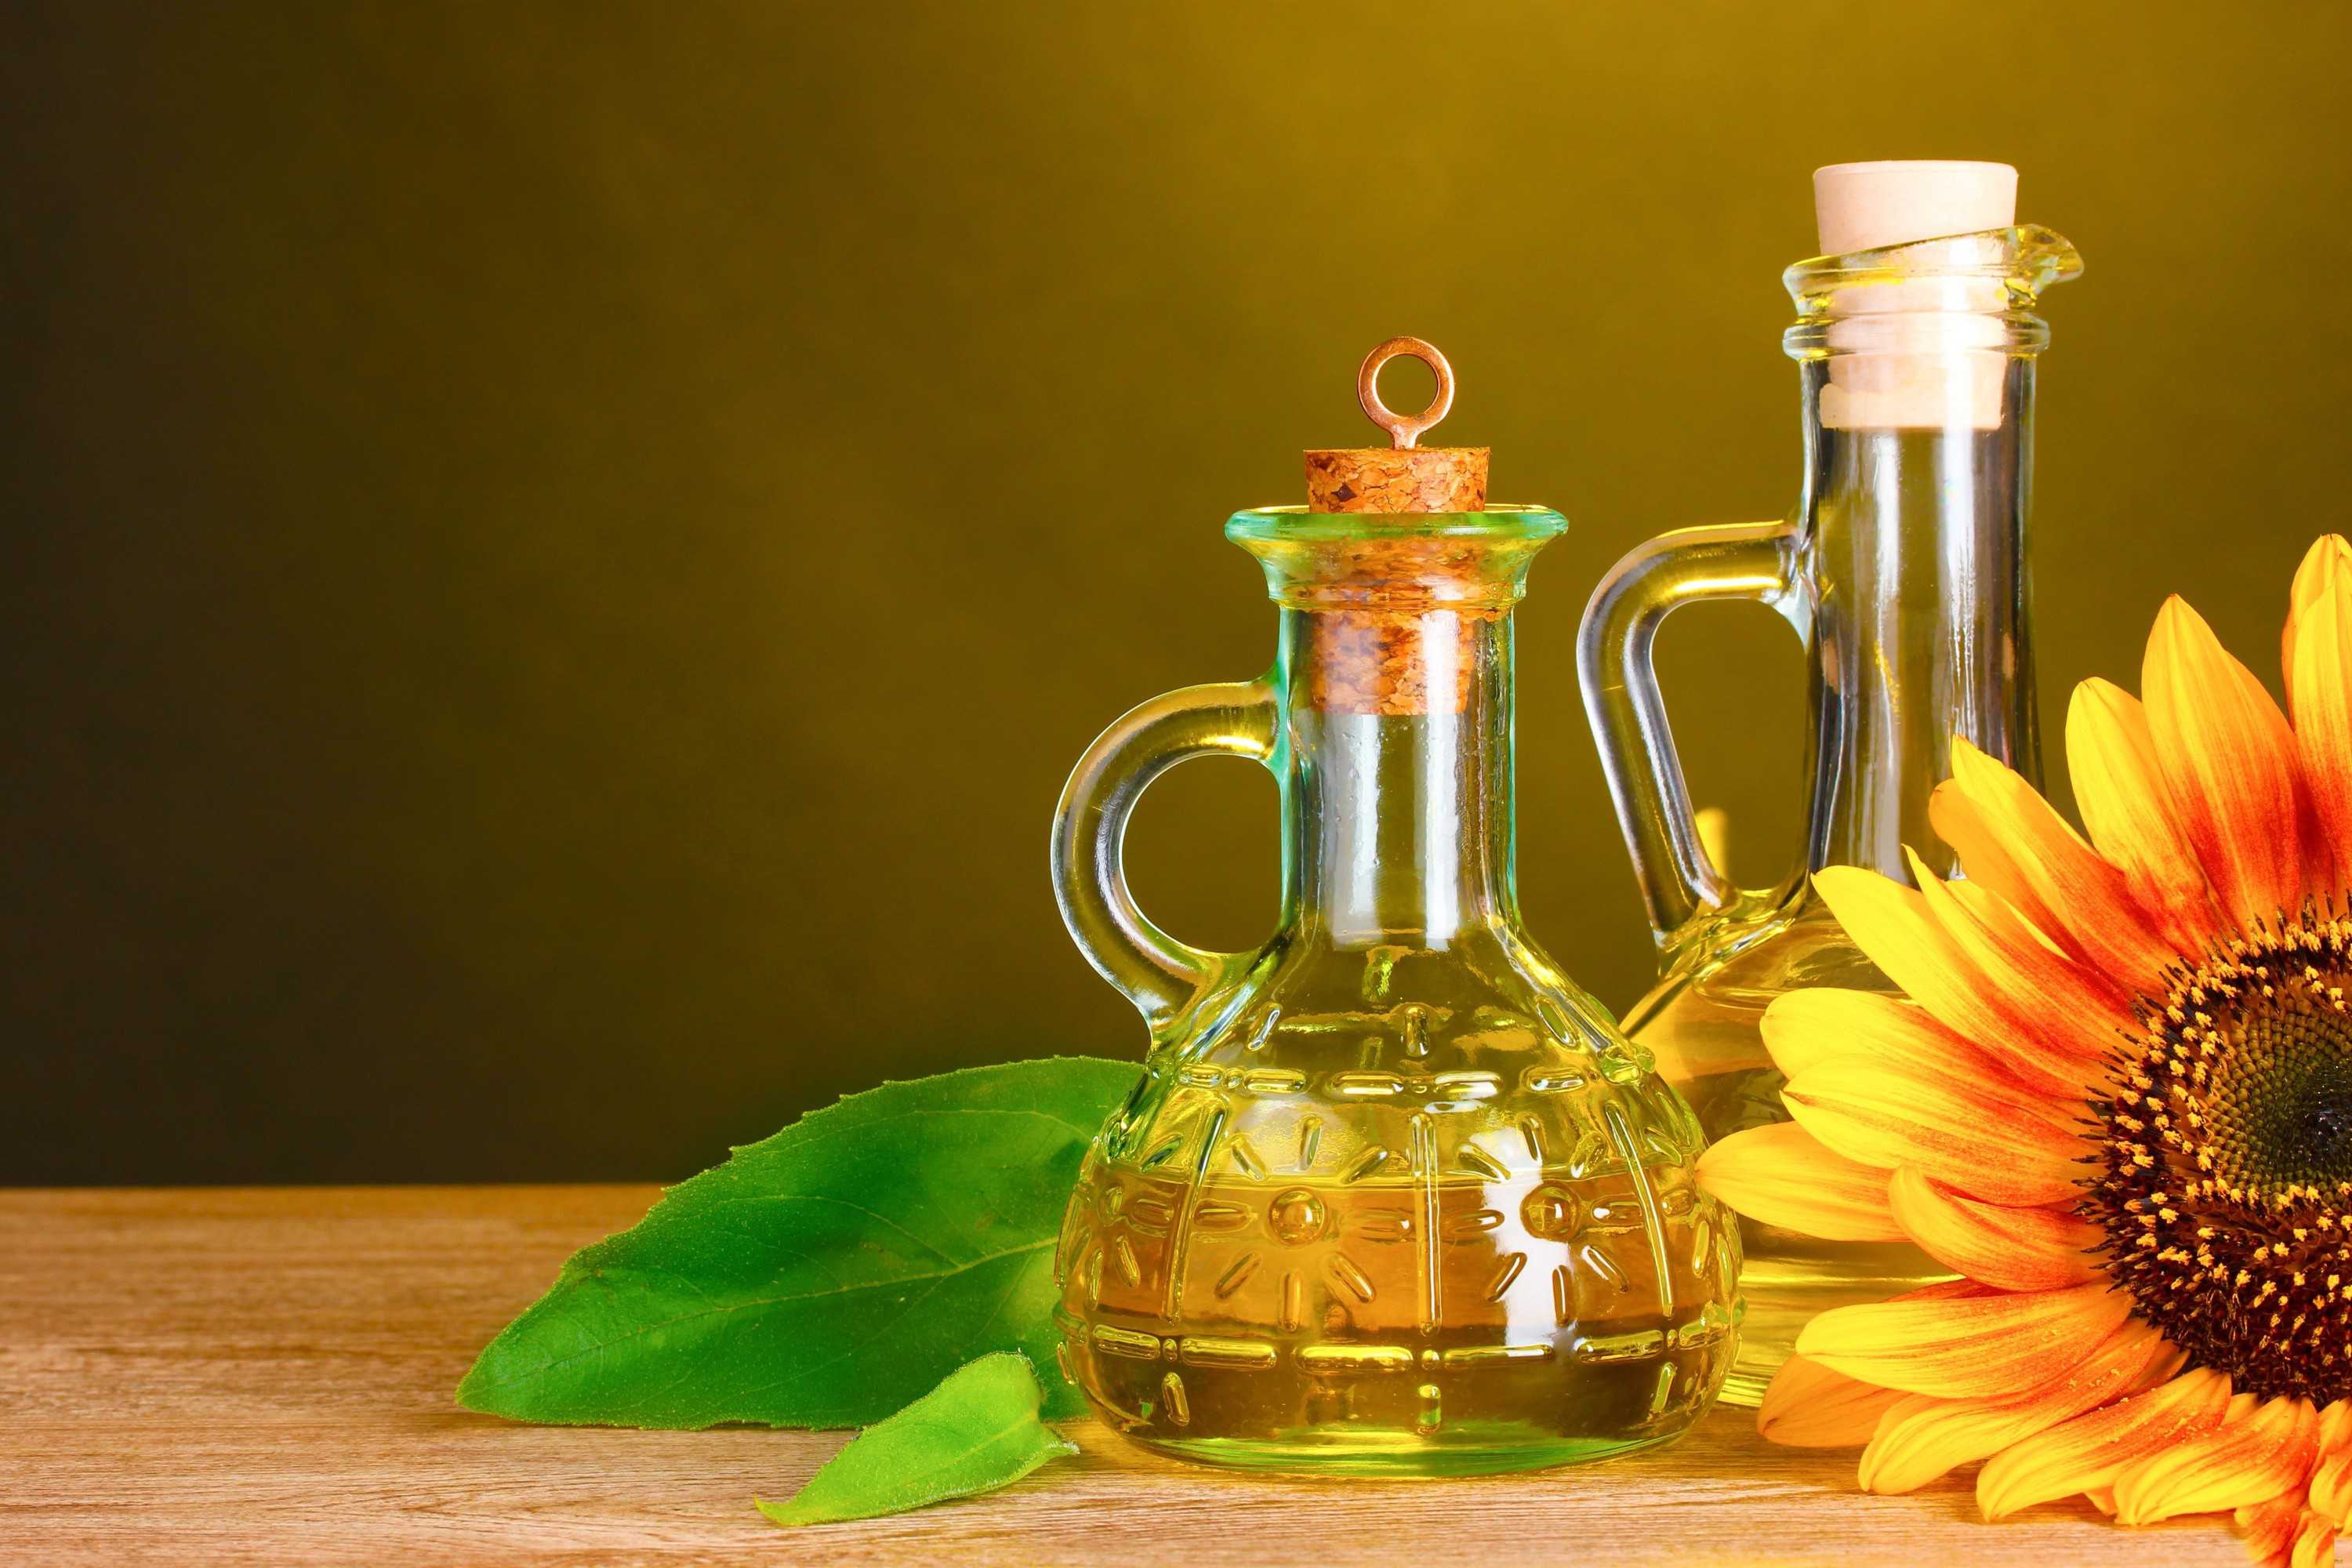 Как употреблять подсолнечное масло с пользой, учитывая его калорийность, состав и полезные свойства?